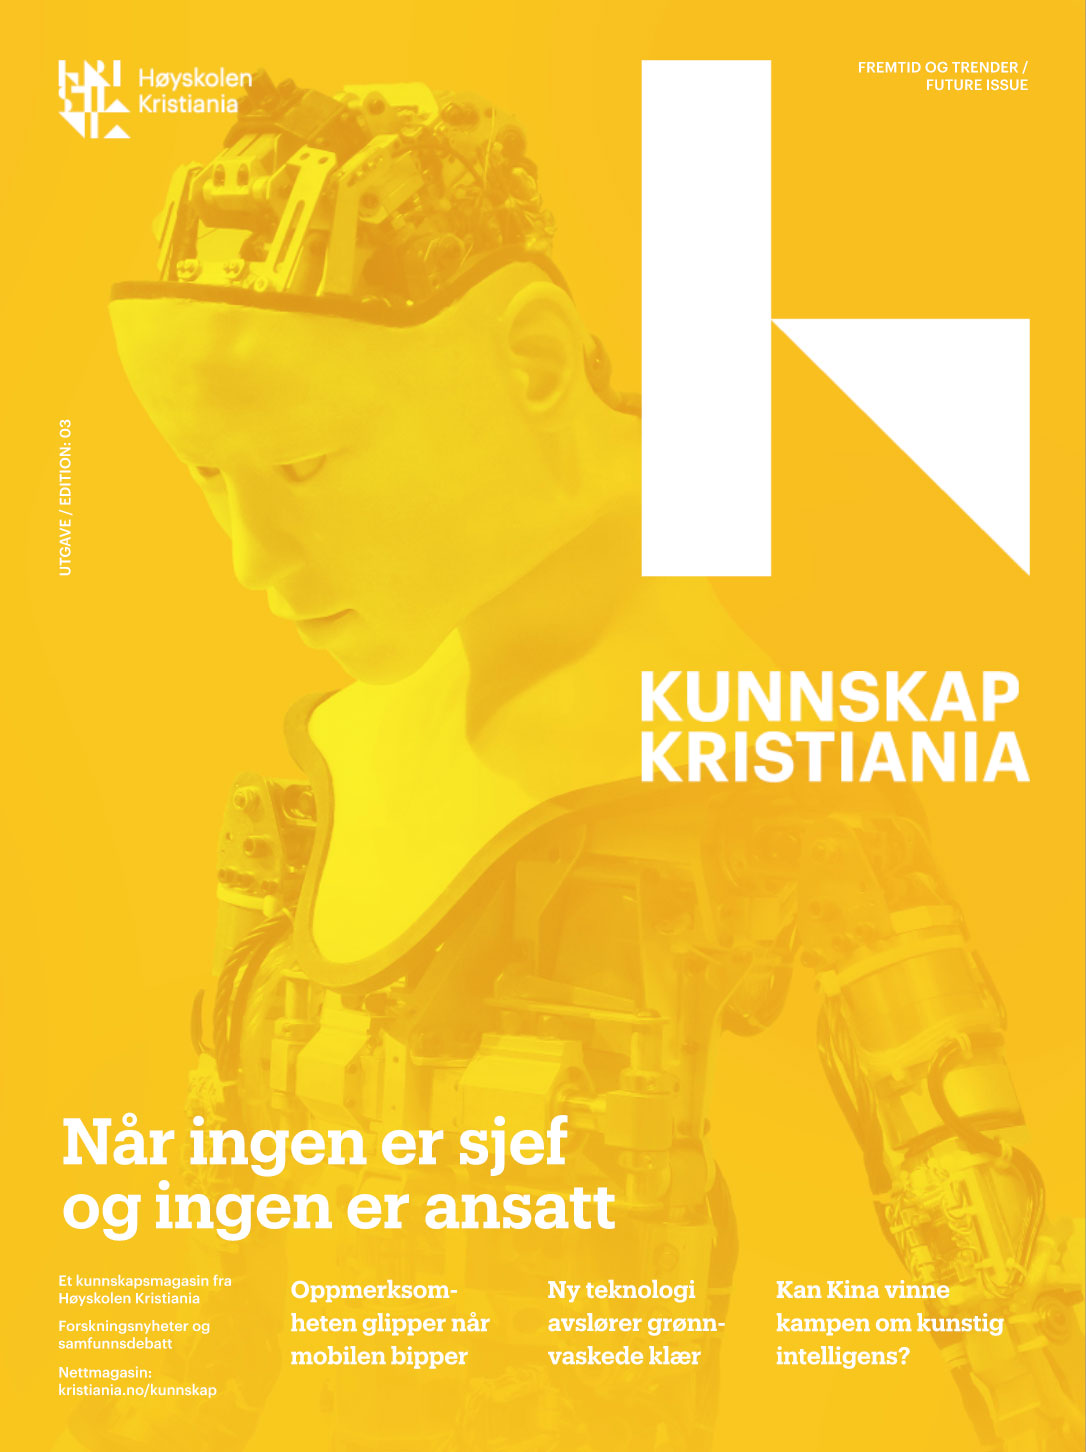 Gul forside av magasinet Kunnskap Kristiania.